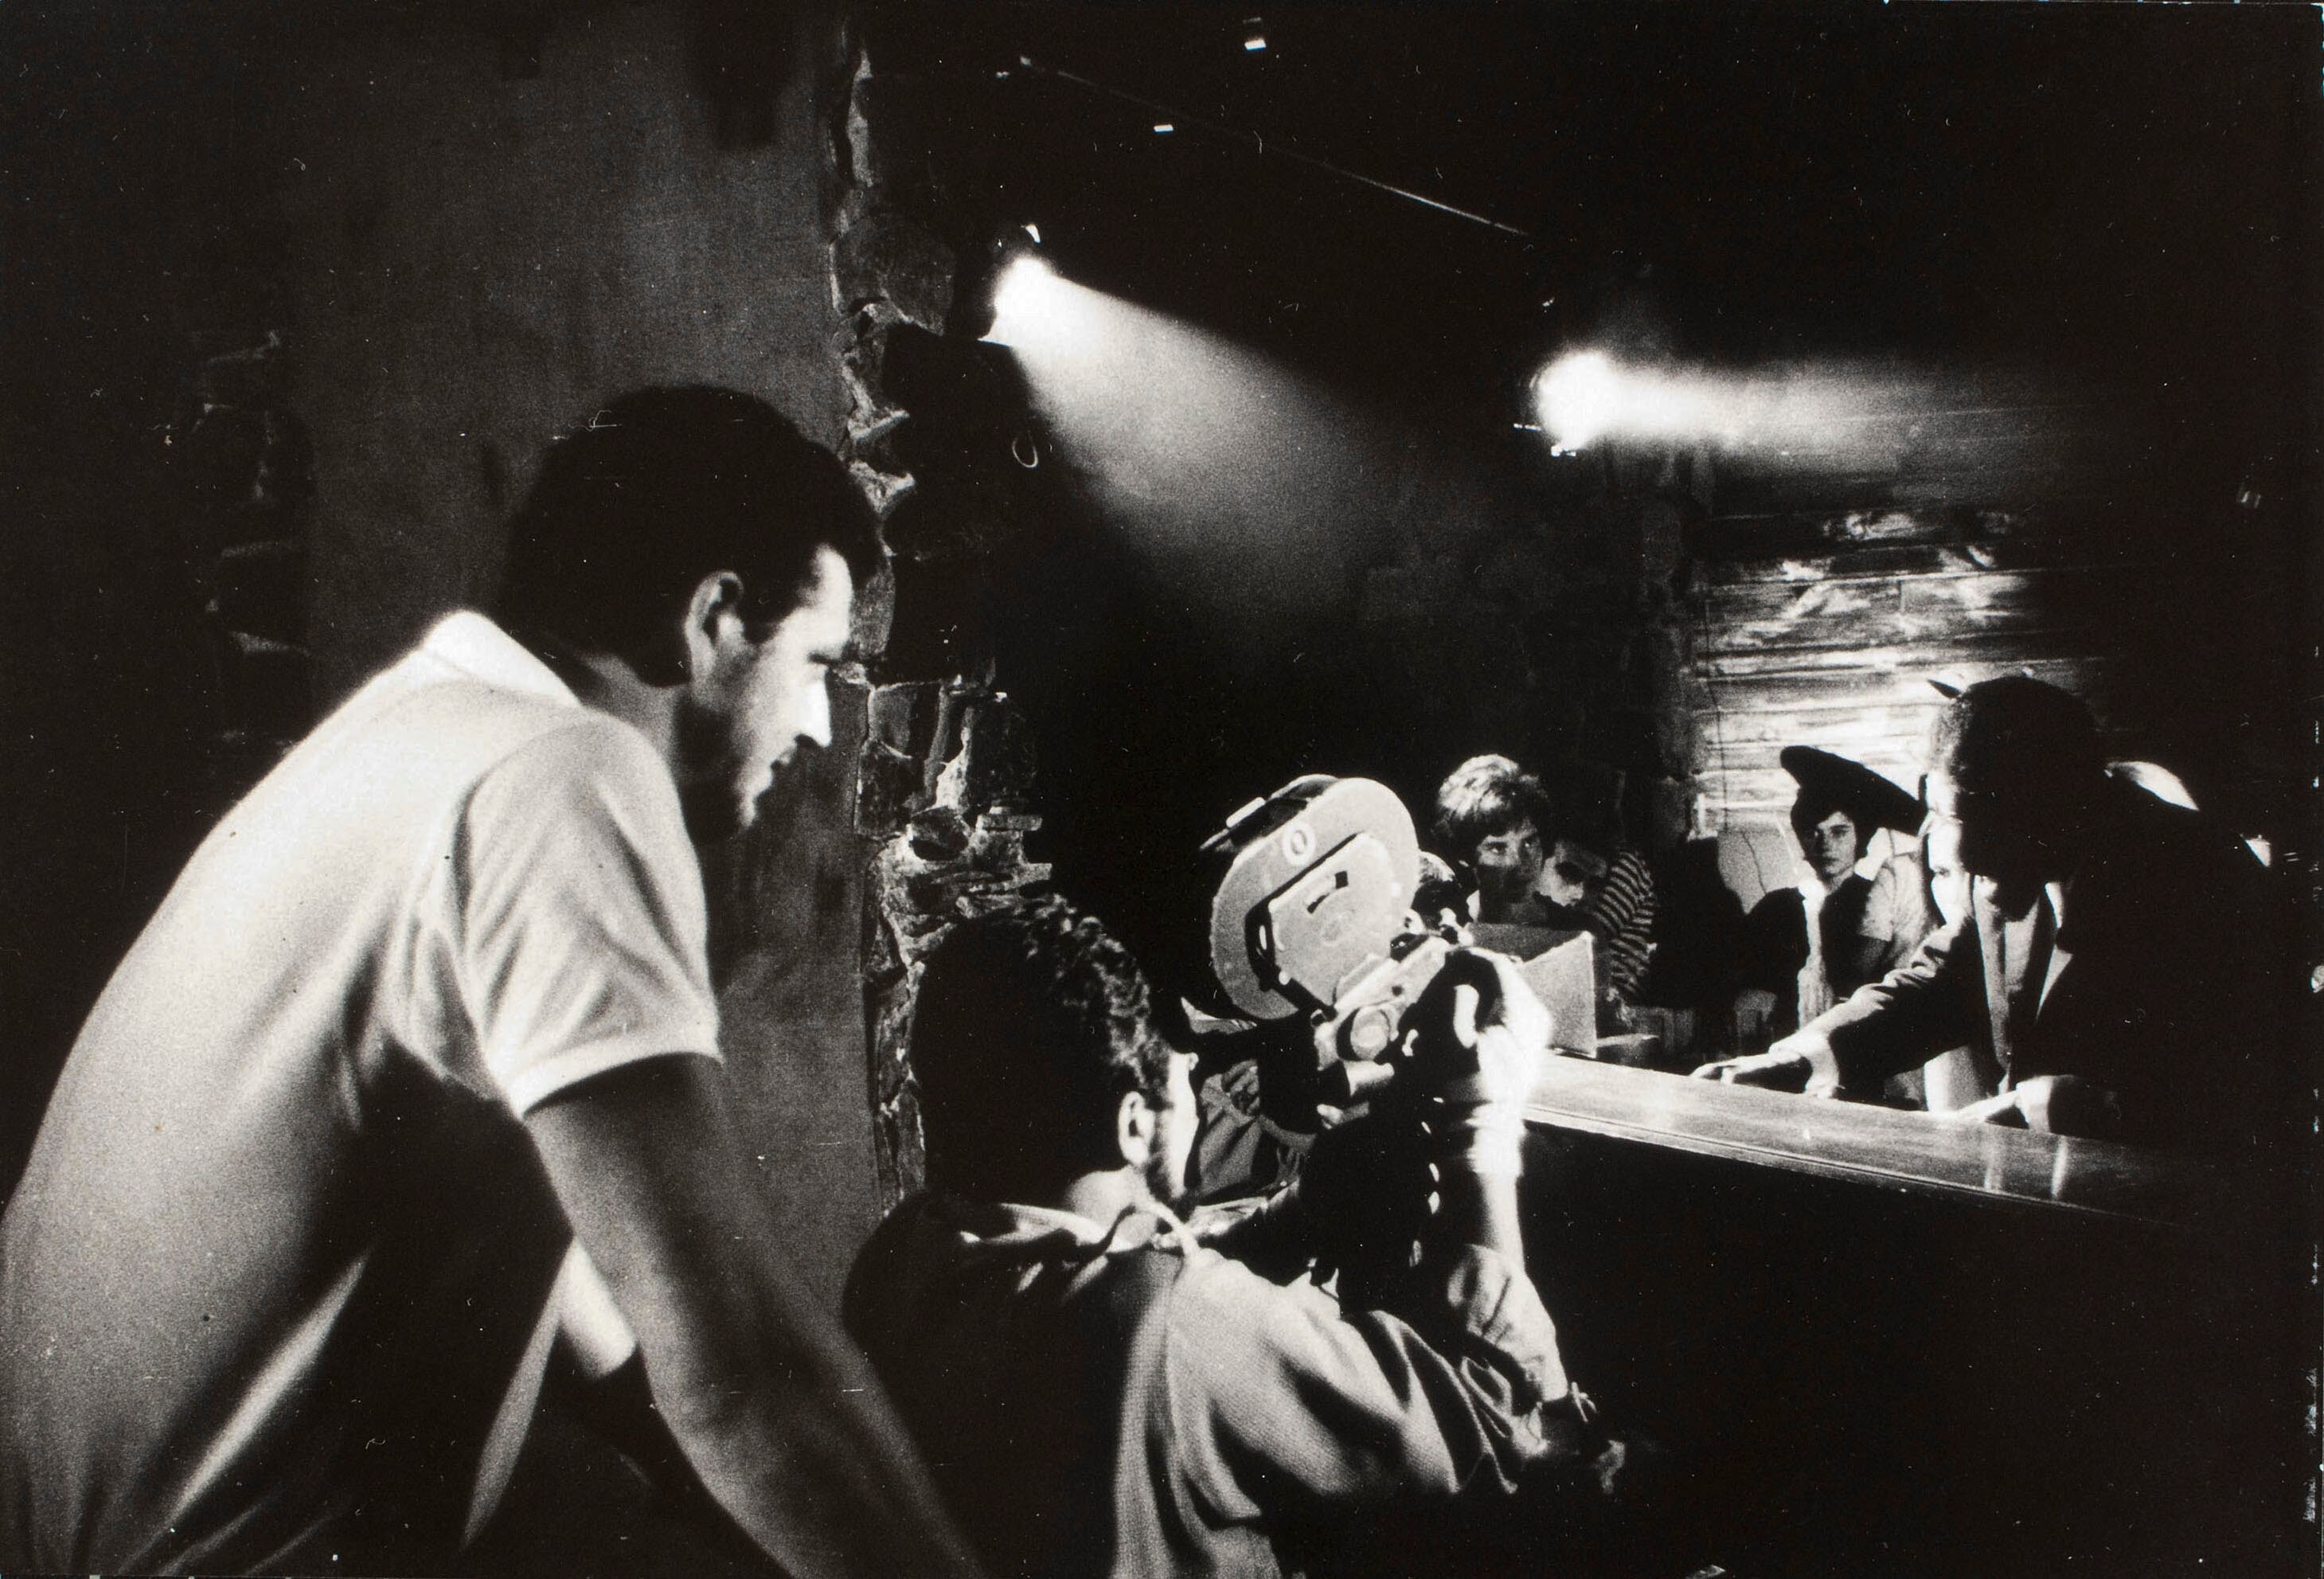 На съёмках фильма Вдали от деревьев Хасинто Эстевы, 1963. Фотограф Ориоль Маспонс